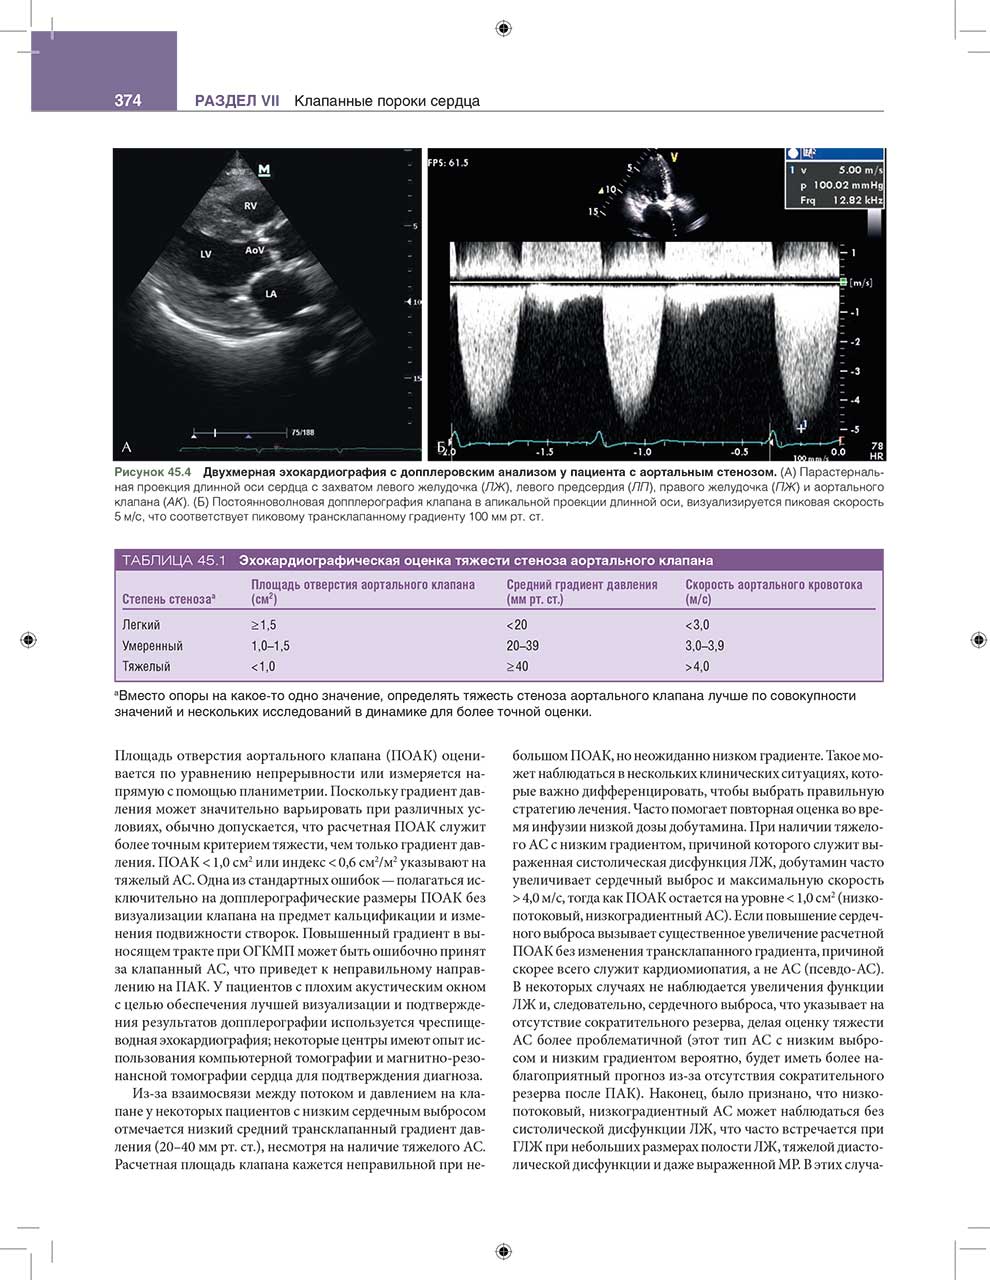 Двухмерная эхокардиография с допплеровским анализом у пациента с аортальным стенозом.